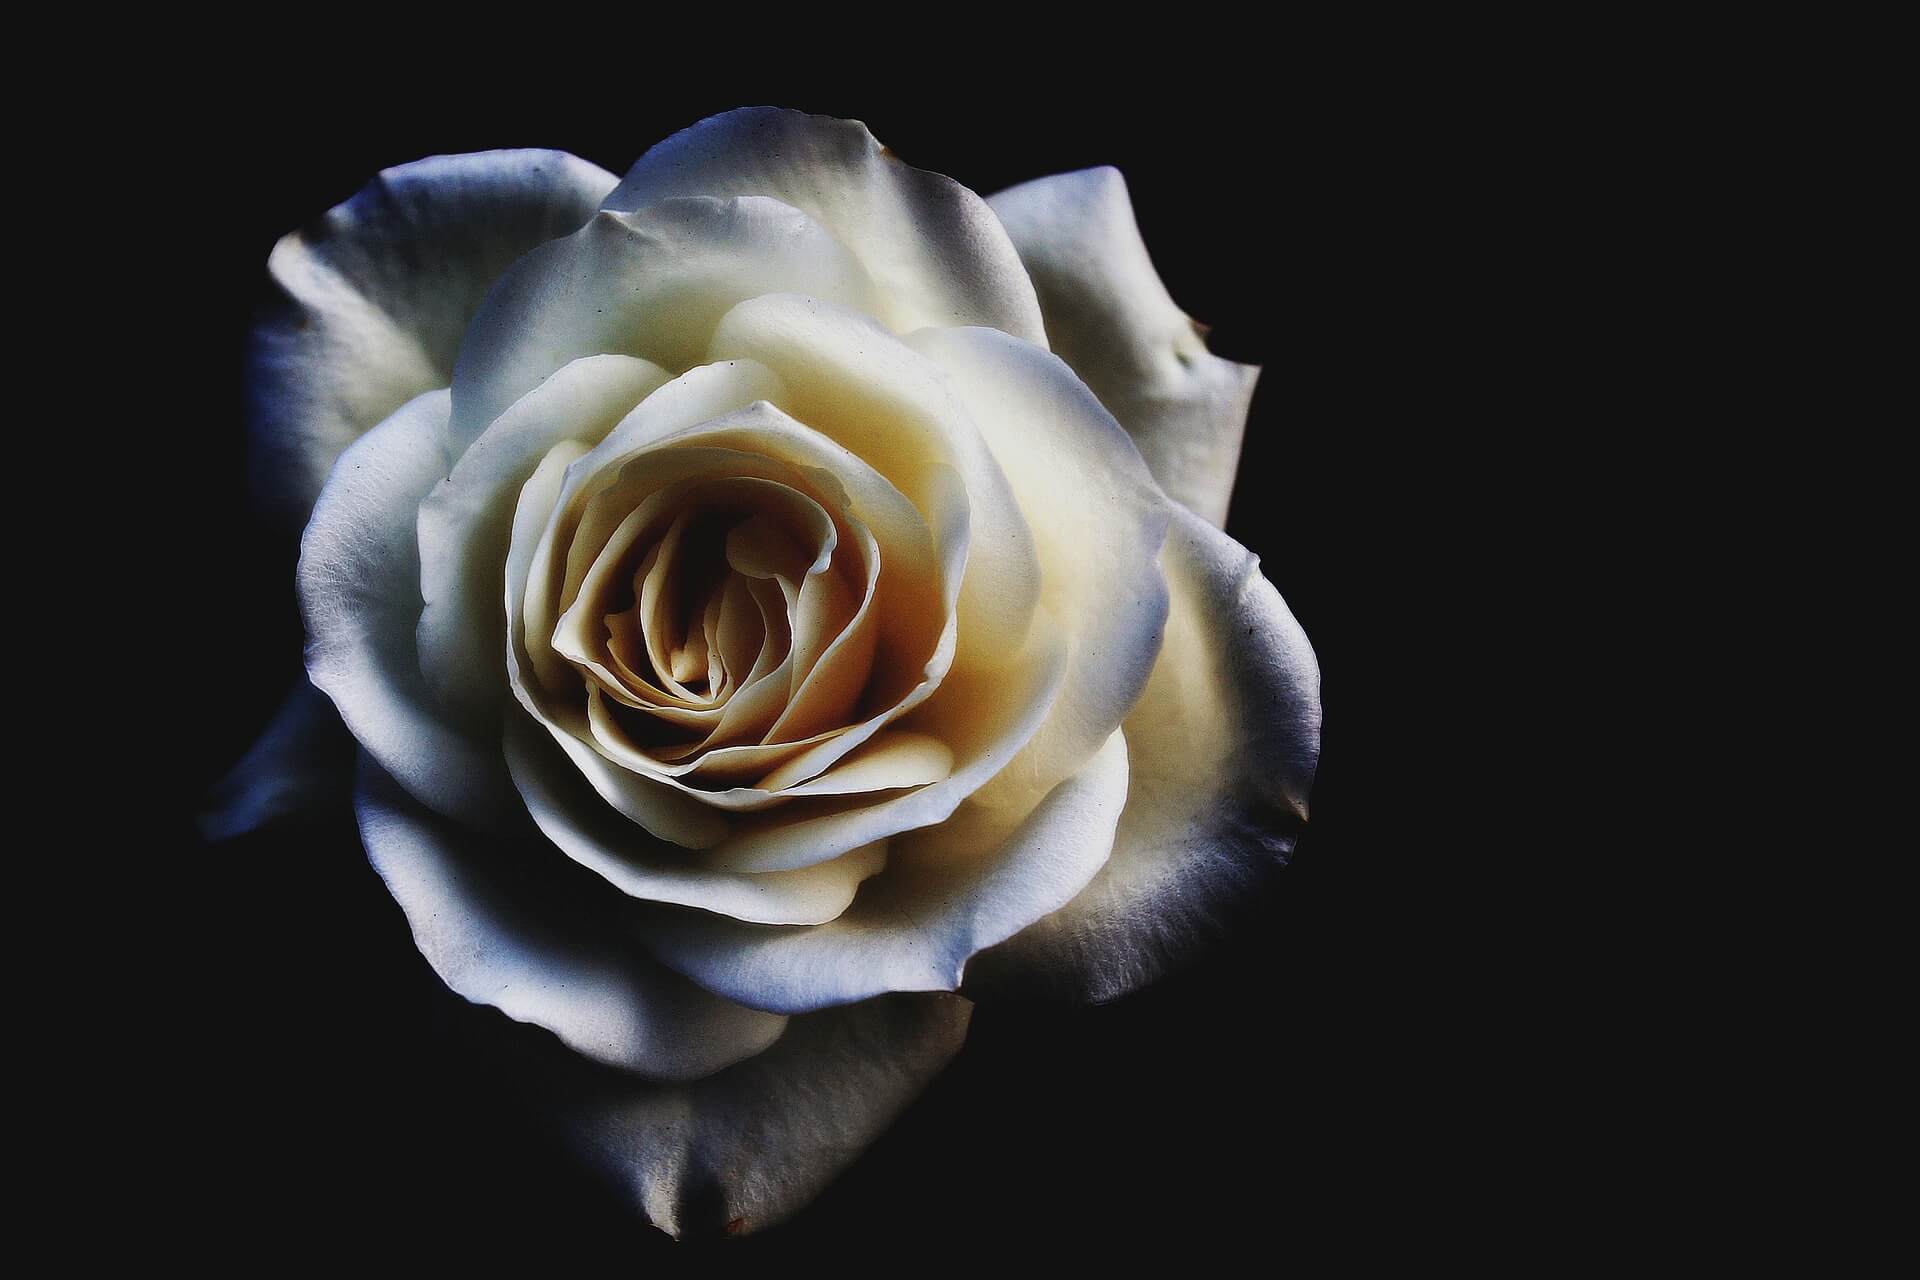 White Rose Flower Background